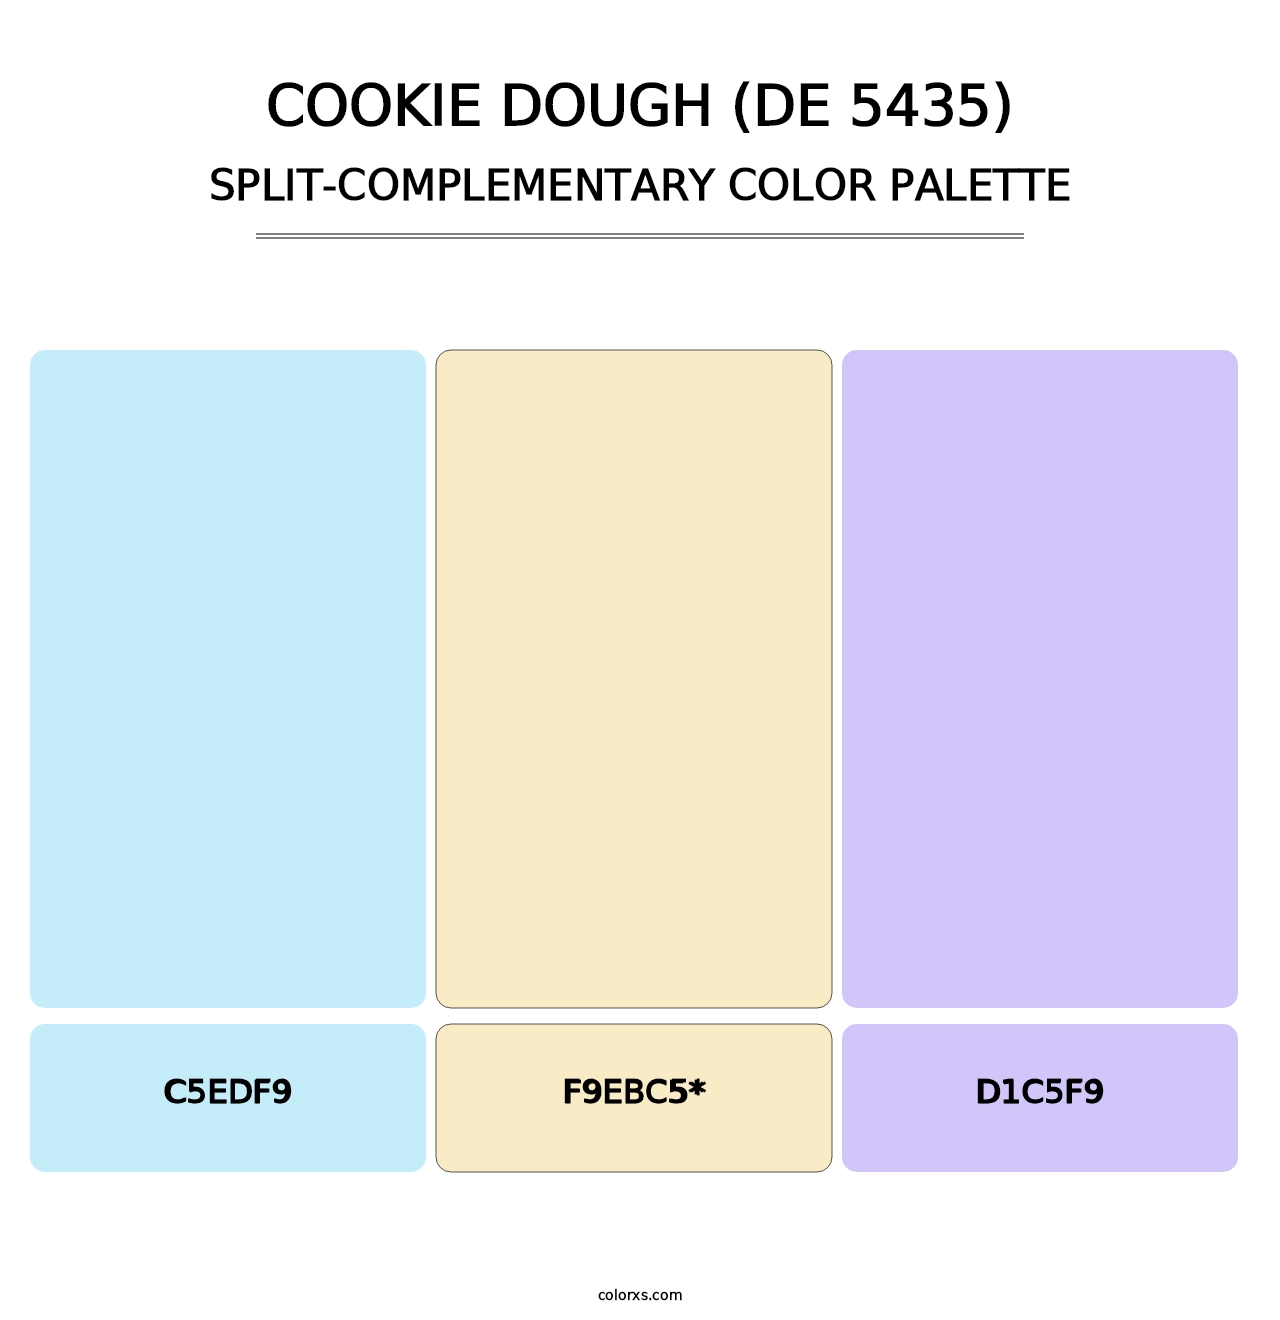 Cookie Dough (DE 5435) - Split-Complementary Color Palette